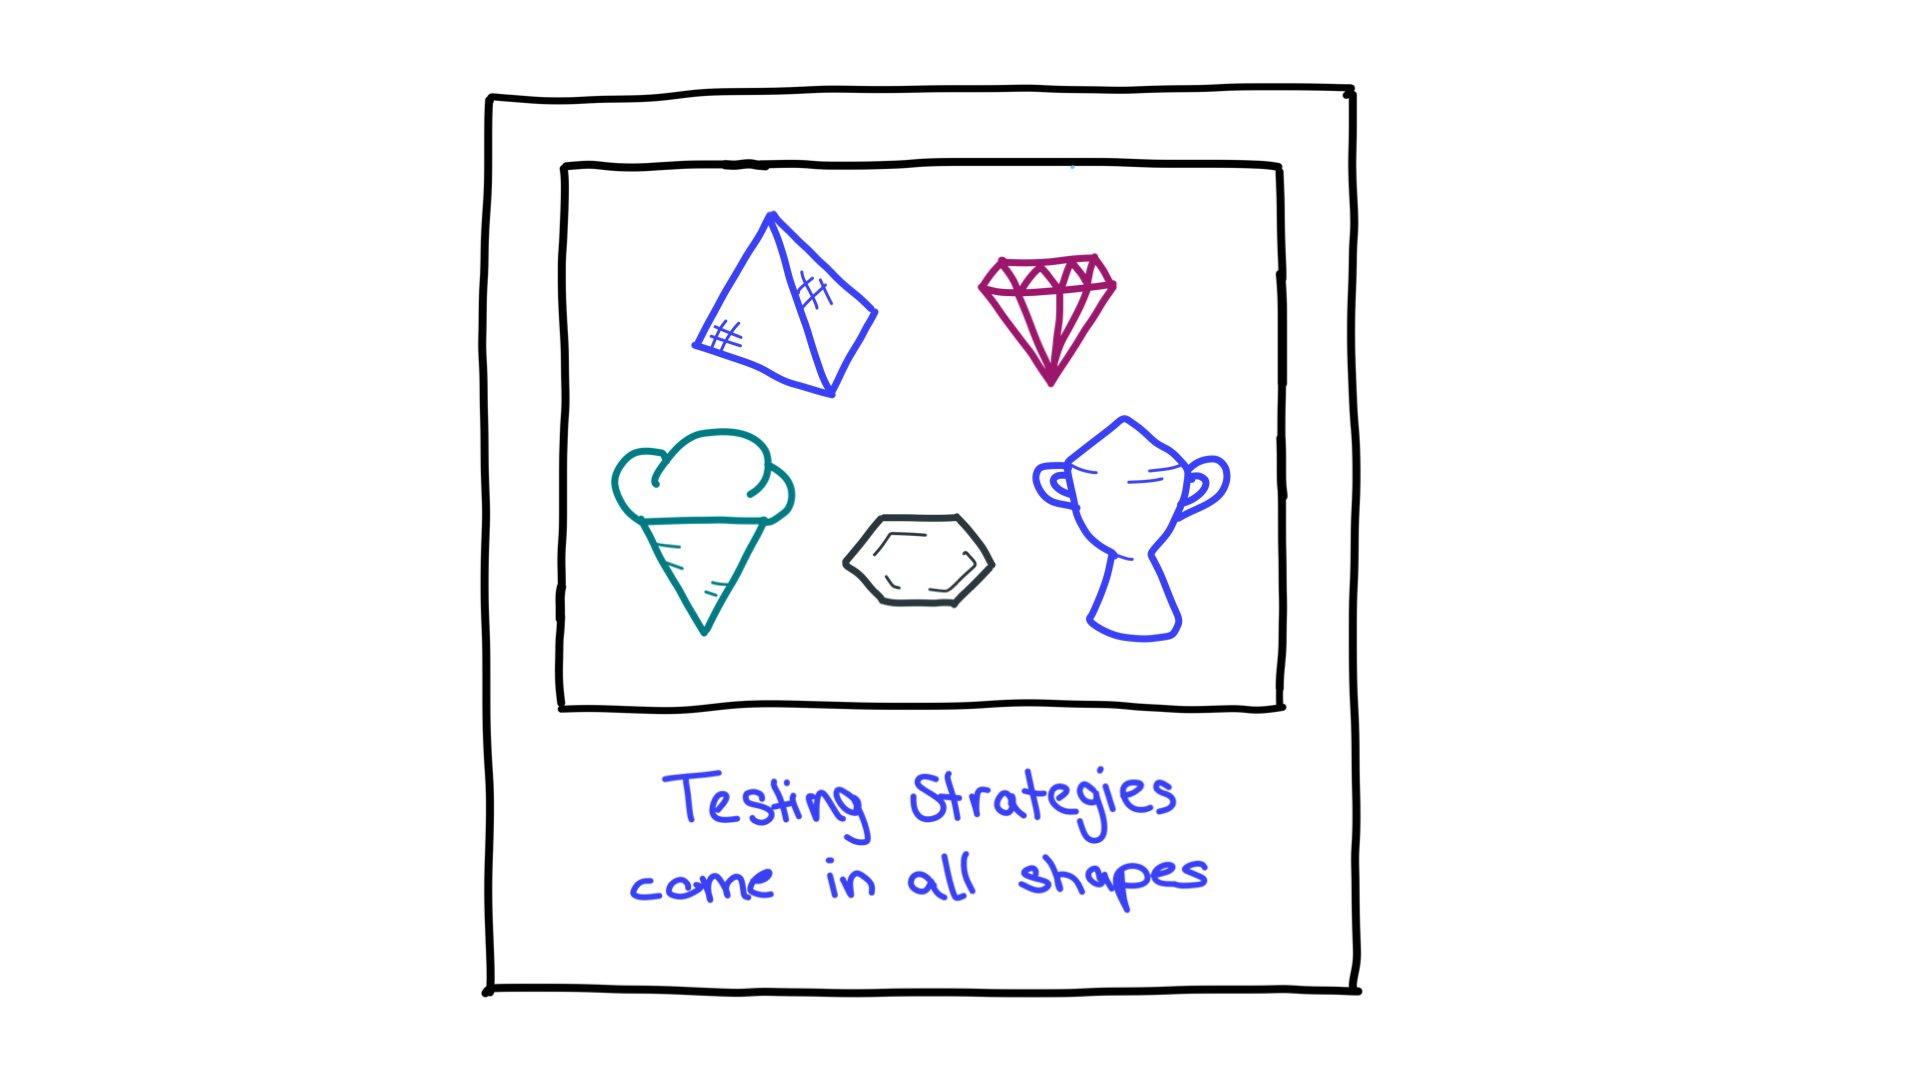 테스트 전략 도형의 예로는 피라미드, 잘린 다이아몬드, 아이스크림콘, 육각형, 트로피가 있습니다.